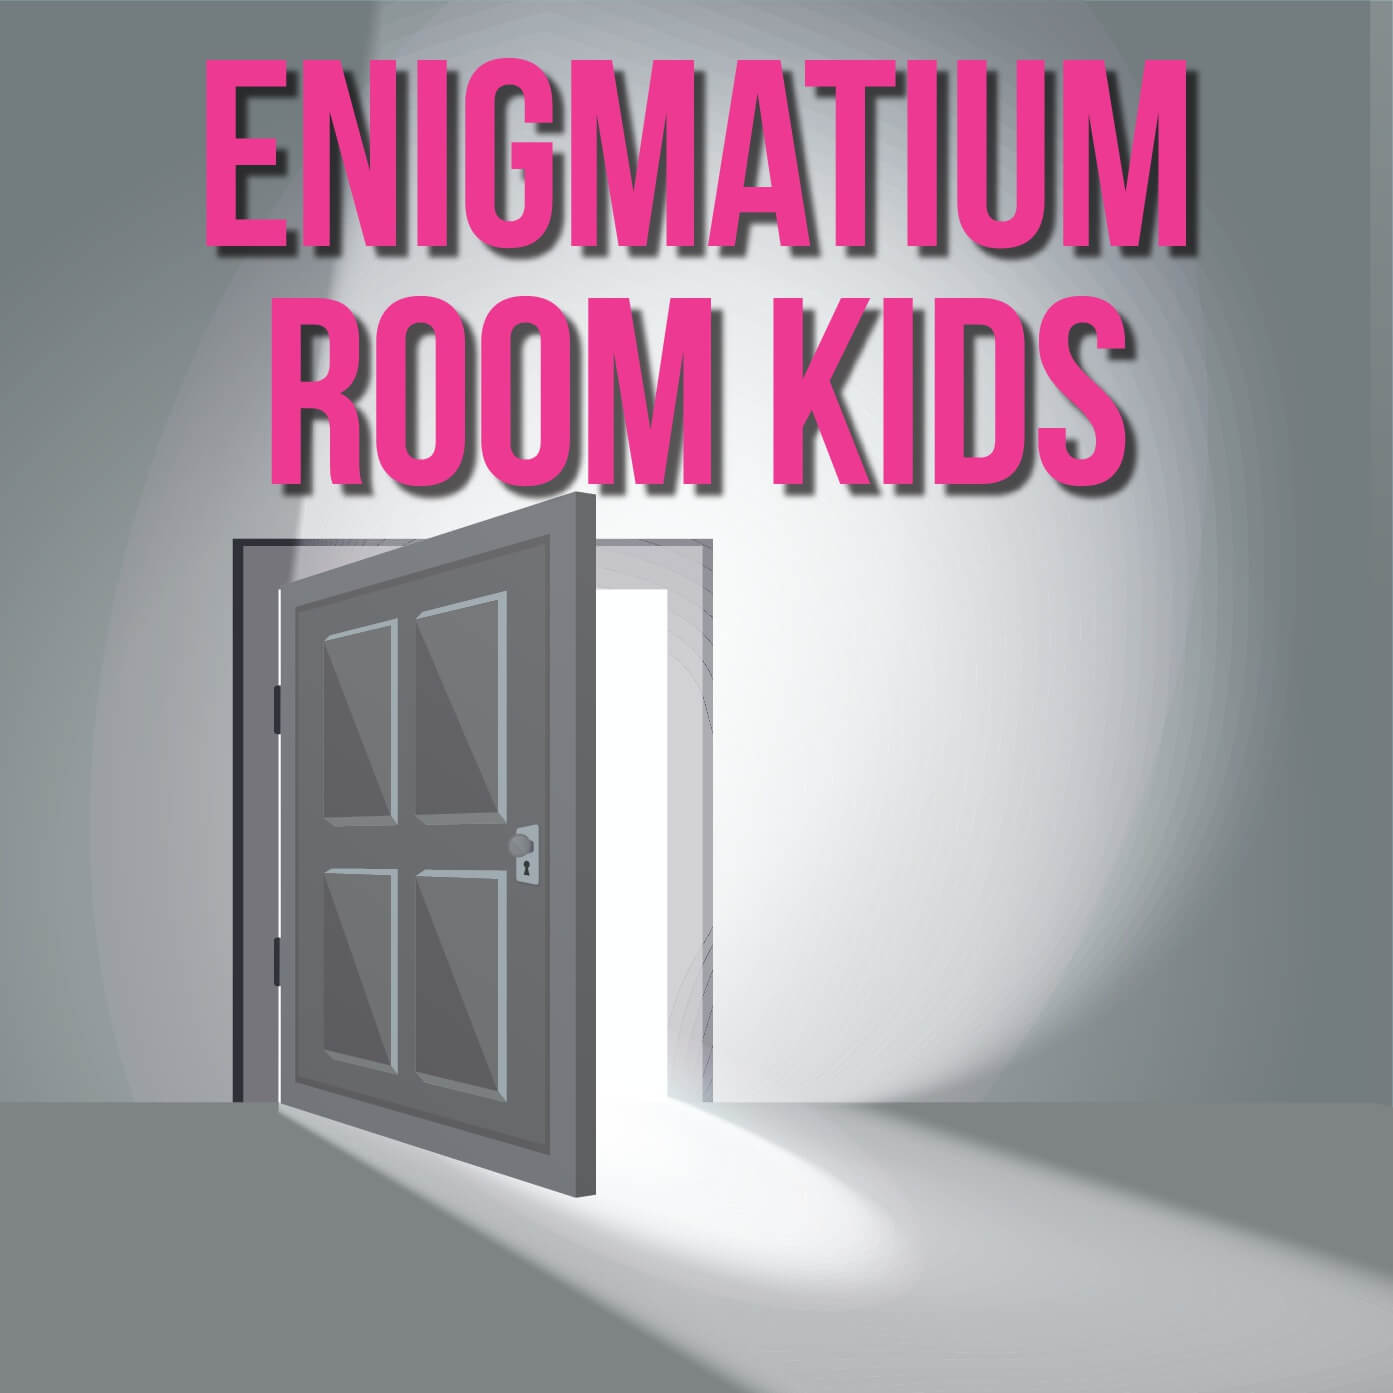 Enigmatium Room Kids